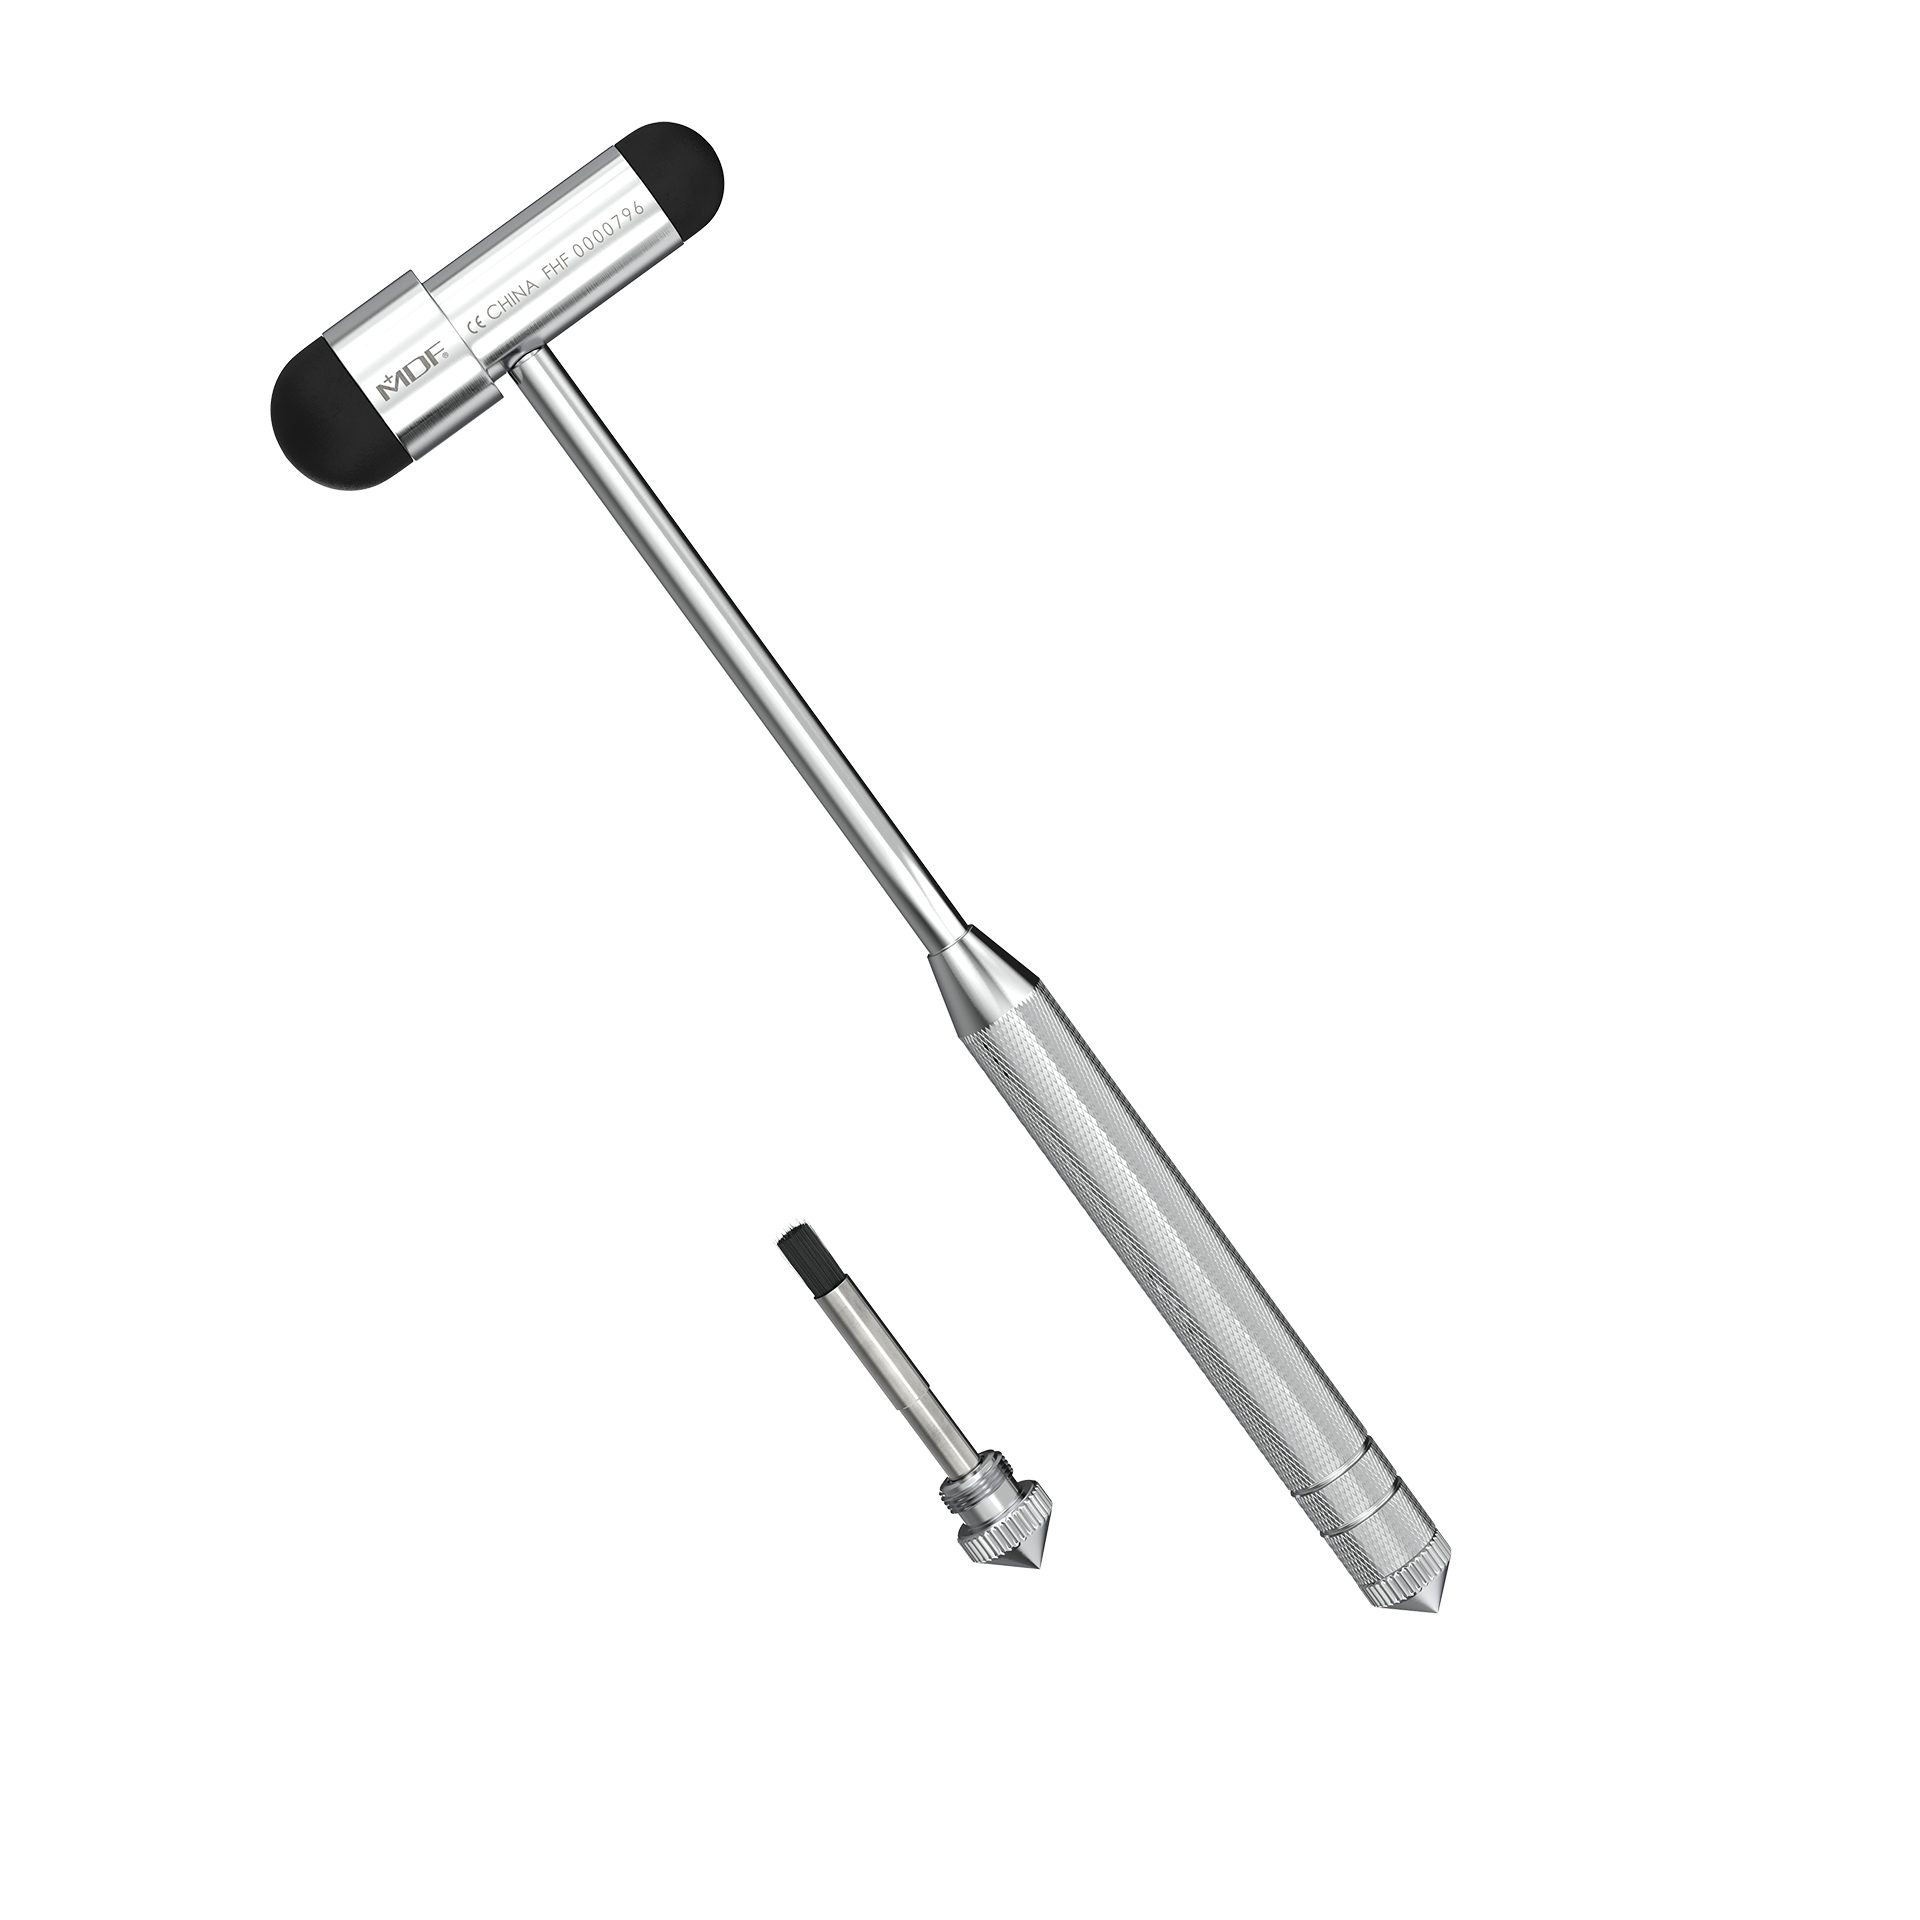 MDF® Babinski Buck® Reflexhammer  ist ein professionelles Diagnoseinstrument für medizinische Fachkräfte